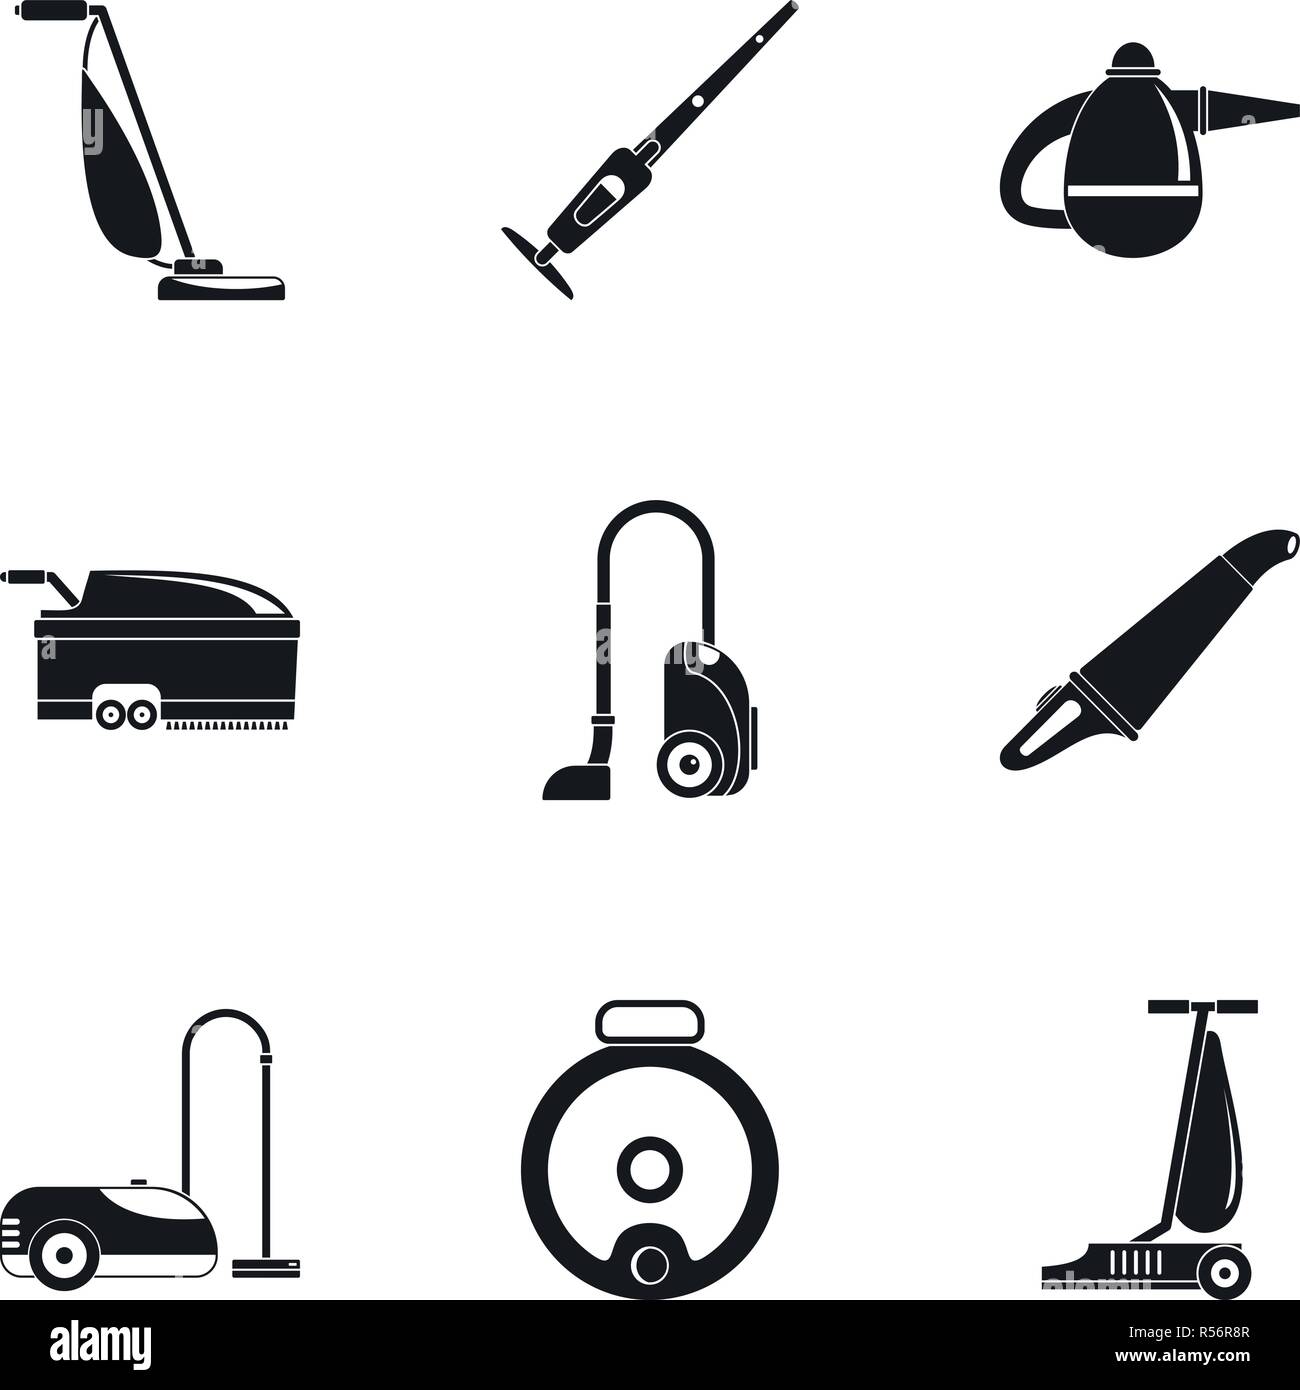 Moderne Staubsauger Icon Set. Einfacher Satz von 9 modernen Staubsauger  Vector Icons für Web Design auf weißem Hintergrund Stock-Vektorgrafik -  Alamy